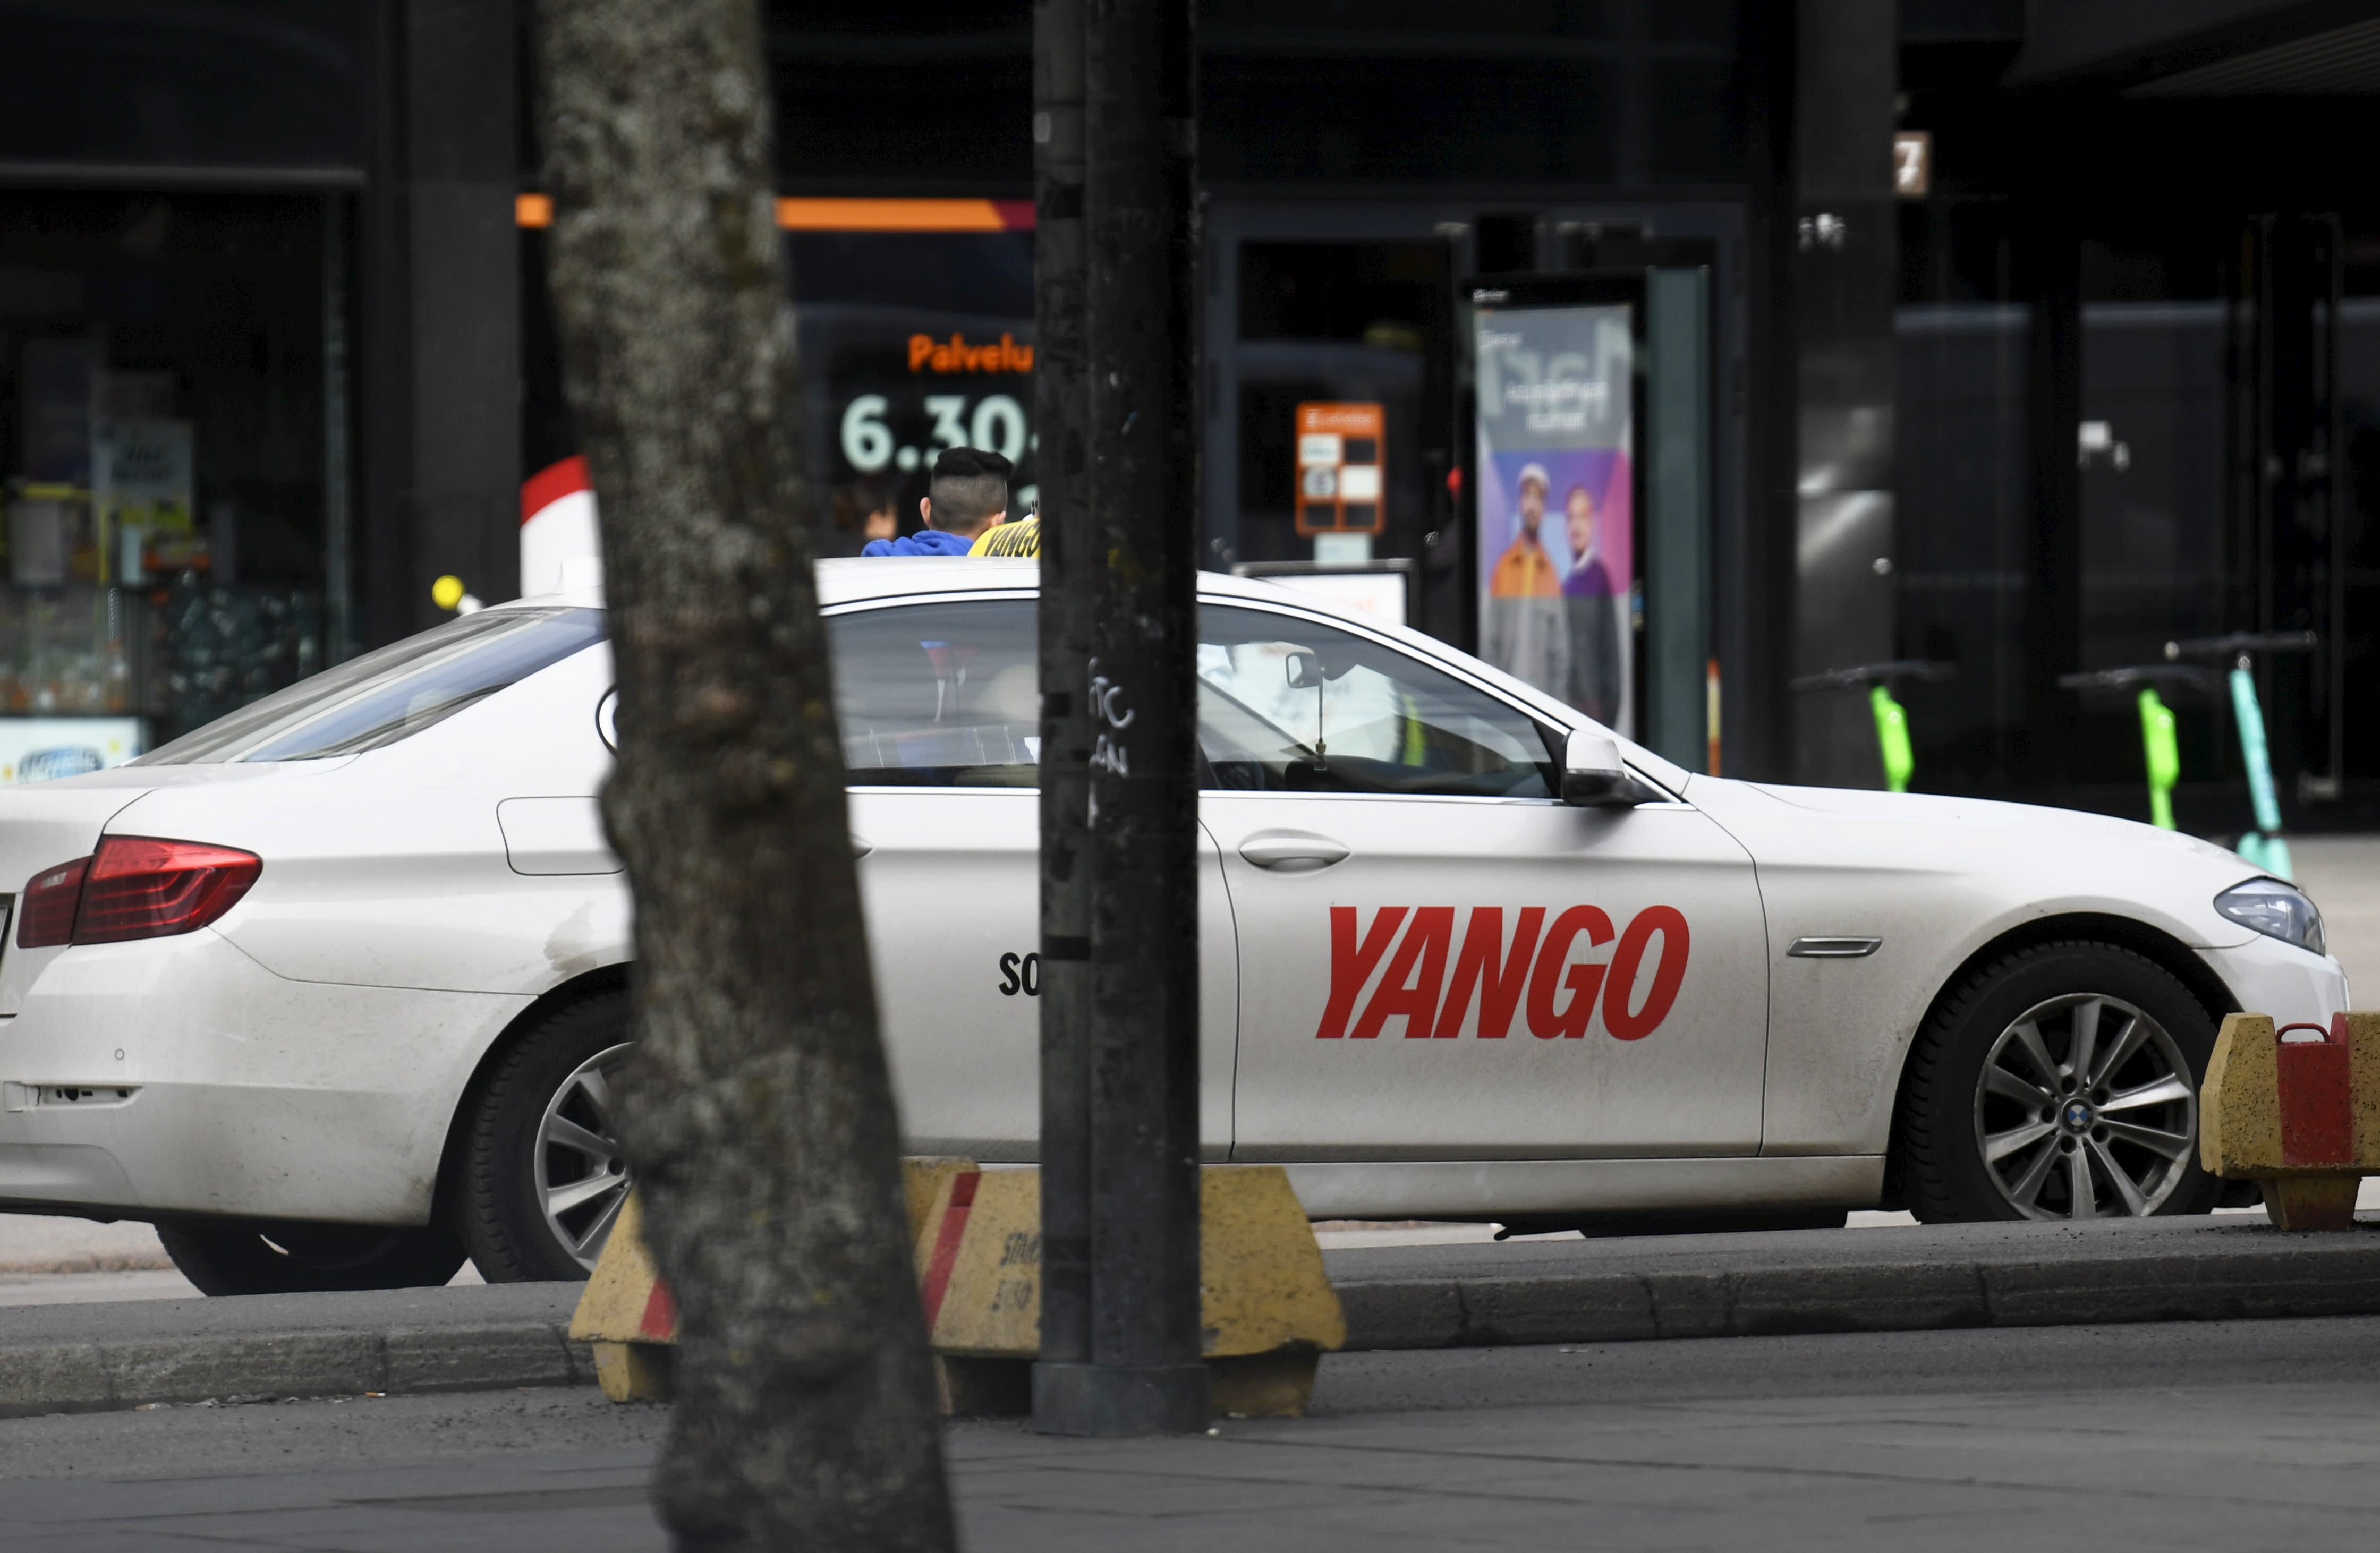 Finnland plant keine Beschränkungen für das russische Taxiunternehmen Yango